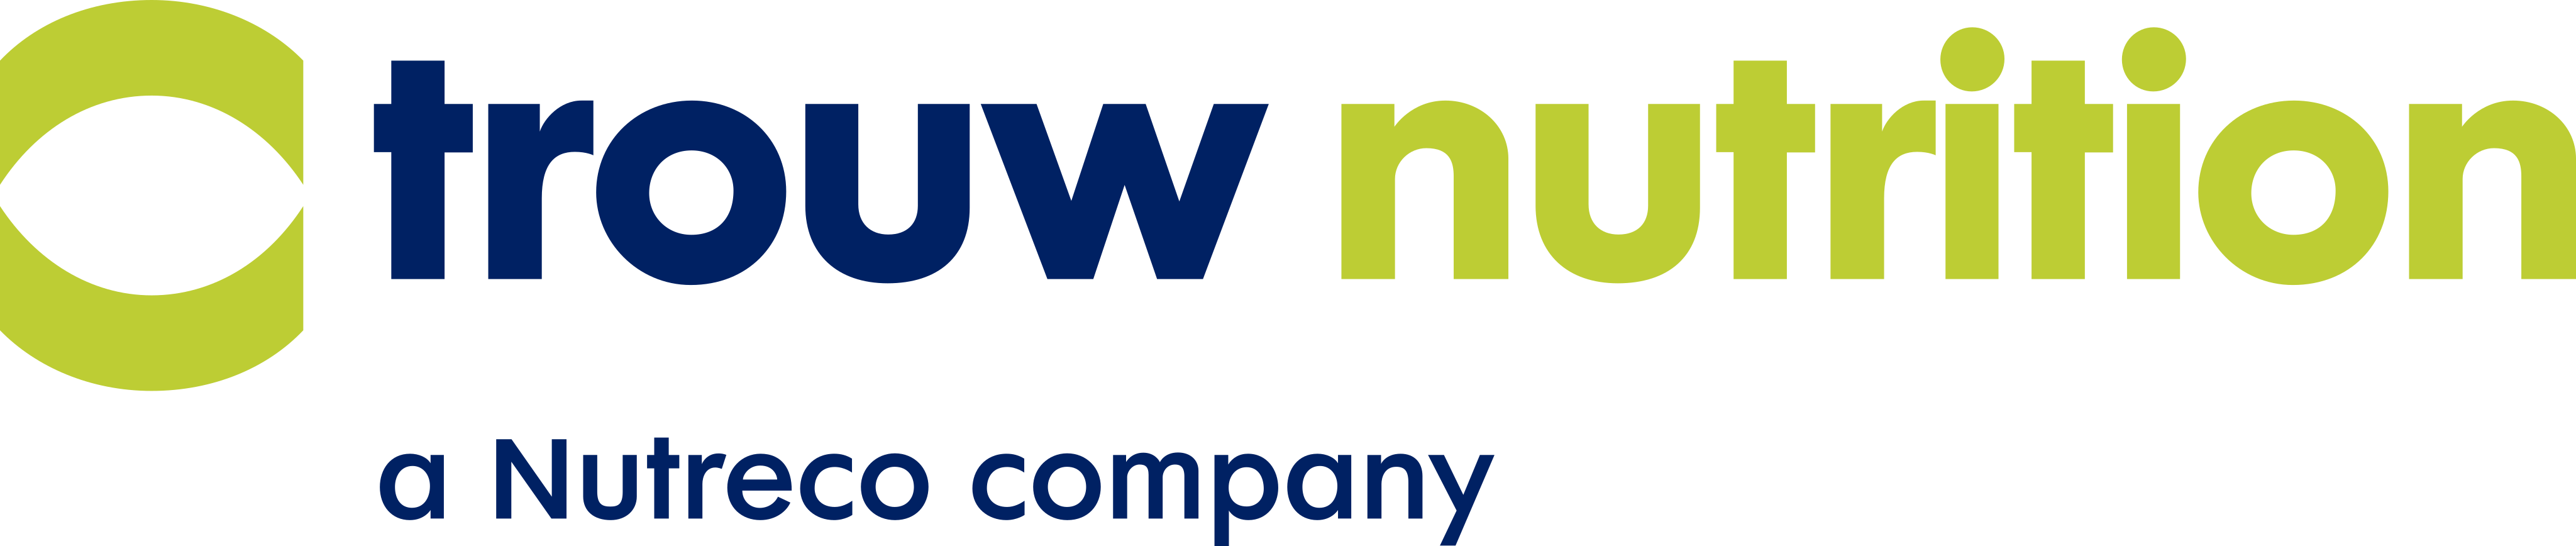 trouw-nutrition-logo